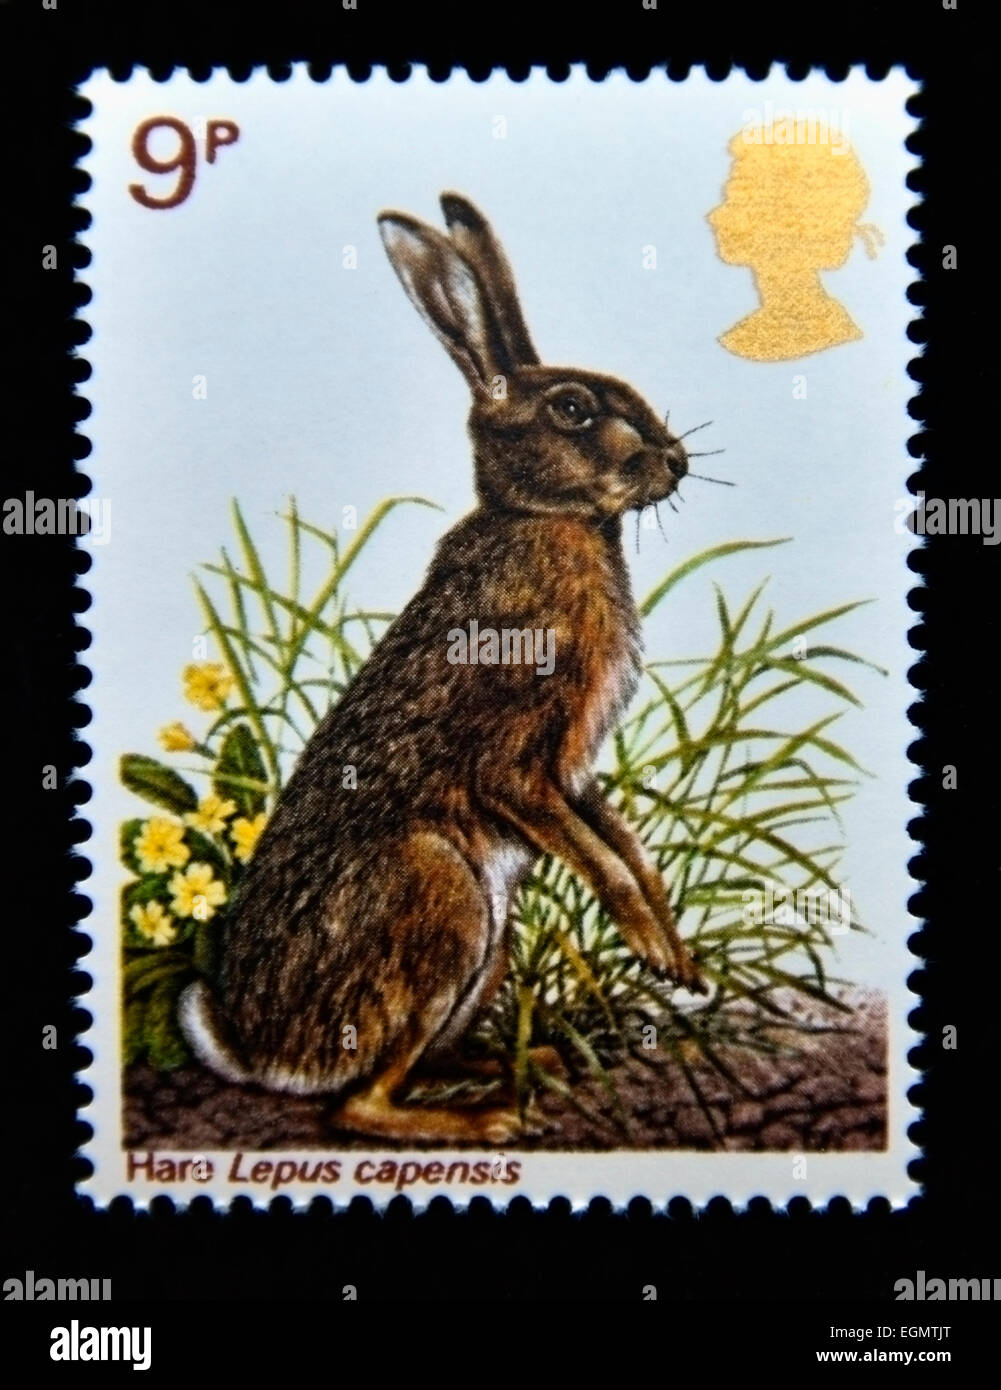 Postage stamp. Great Britain. Queen Elizabeth II. 1977. British Wildlife. Hare. Lepus capensis. 9p. Stock Photo